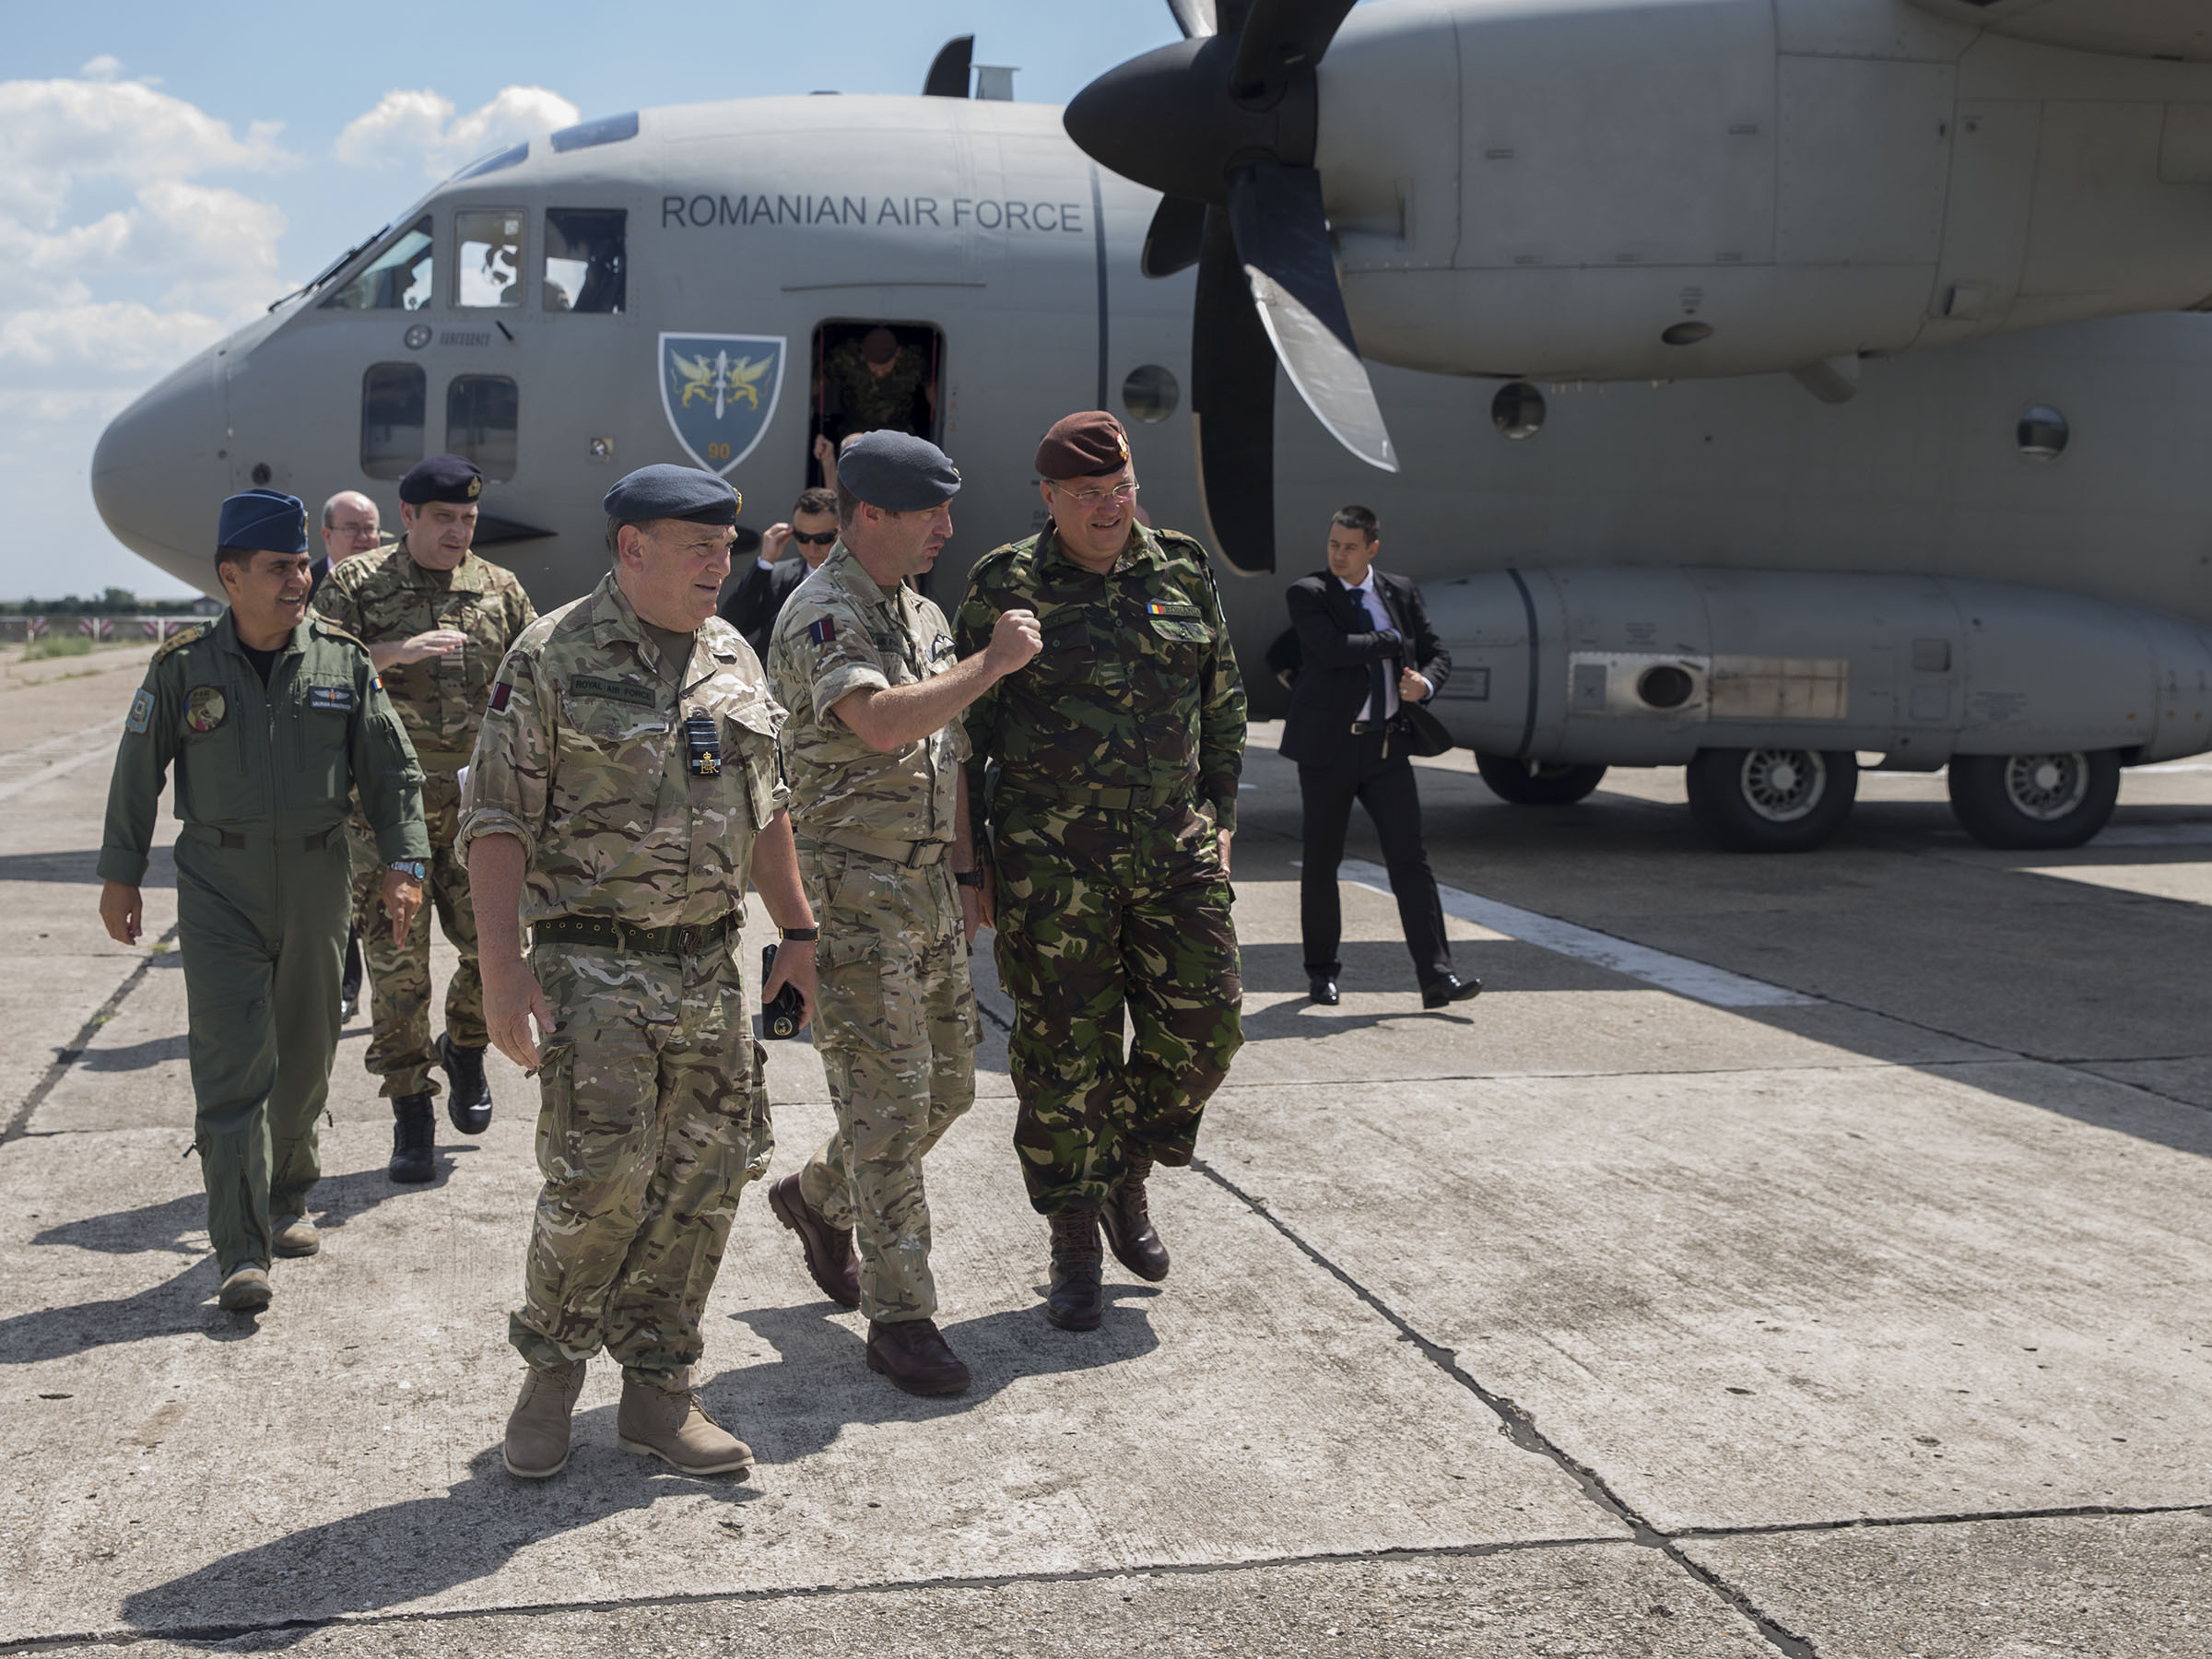 Vizită inopinată în România: Şeful Statului Major al Marii Britanii a venit să inspecteze trupele astfel încât să fie pregătite de orice intervenţie rapidă